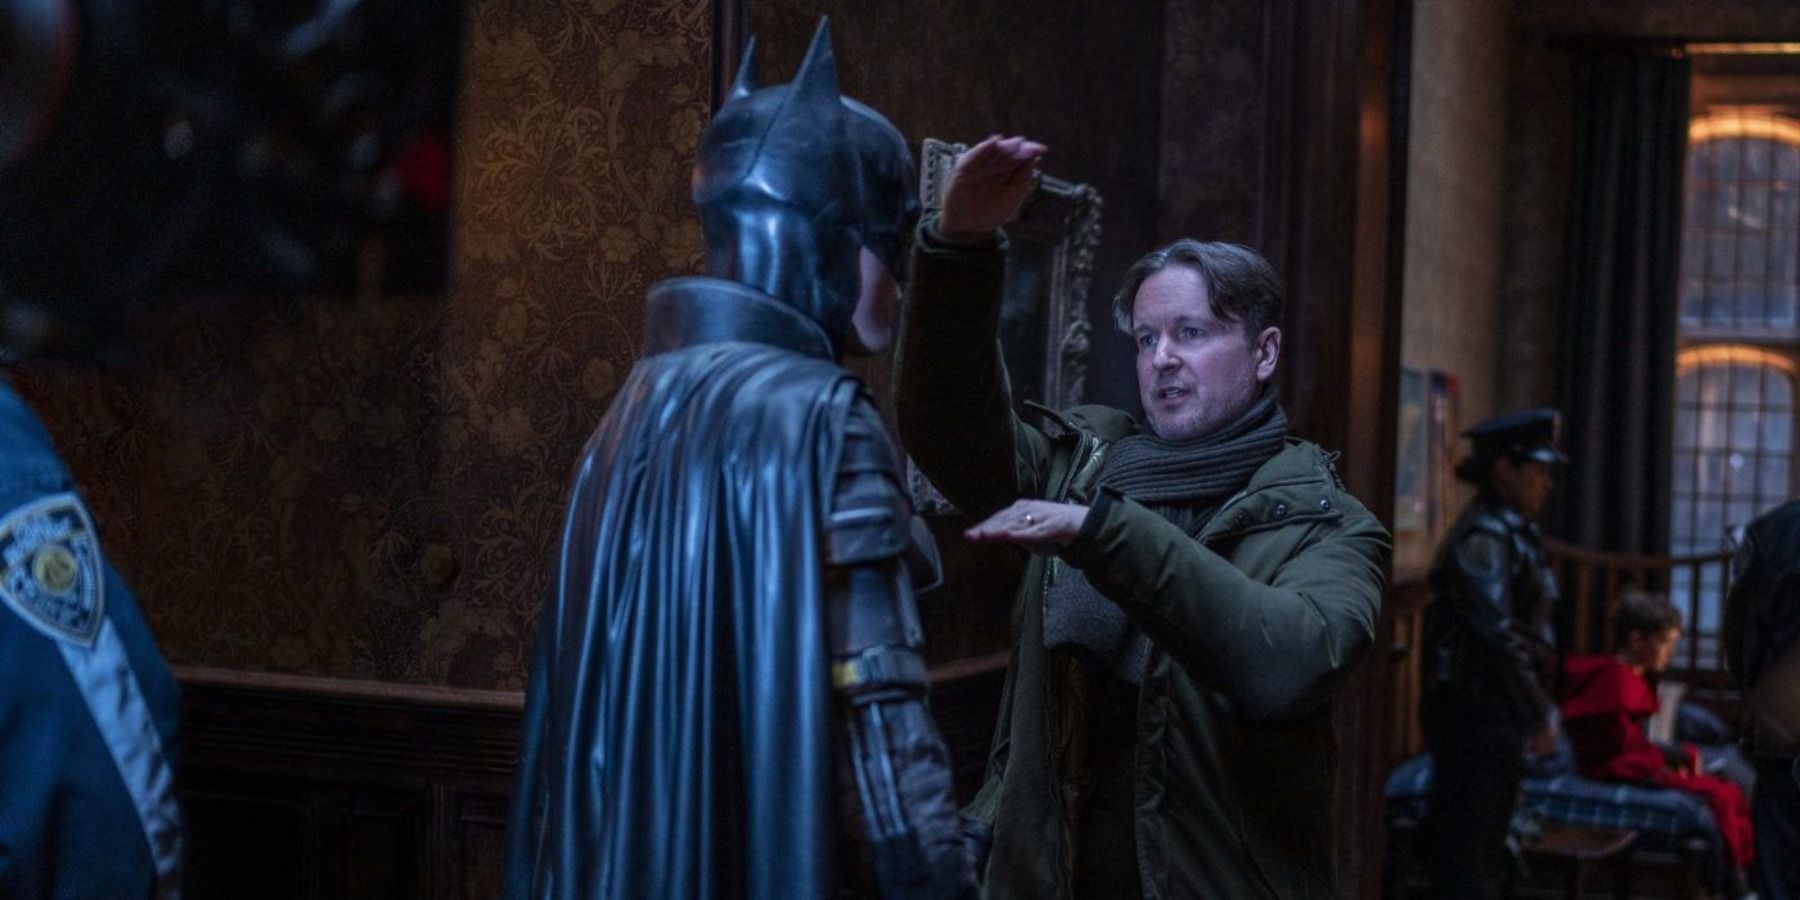 Matt Reeves behind the scenes in The Batman